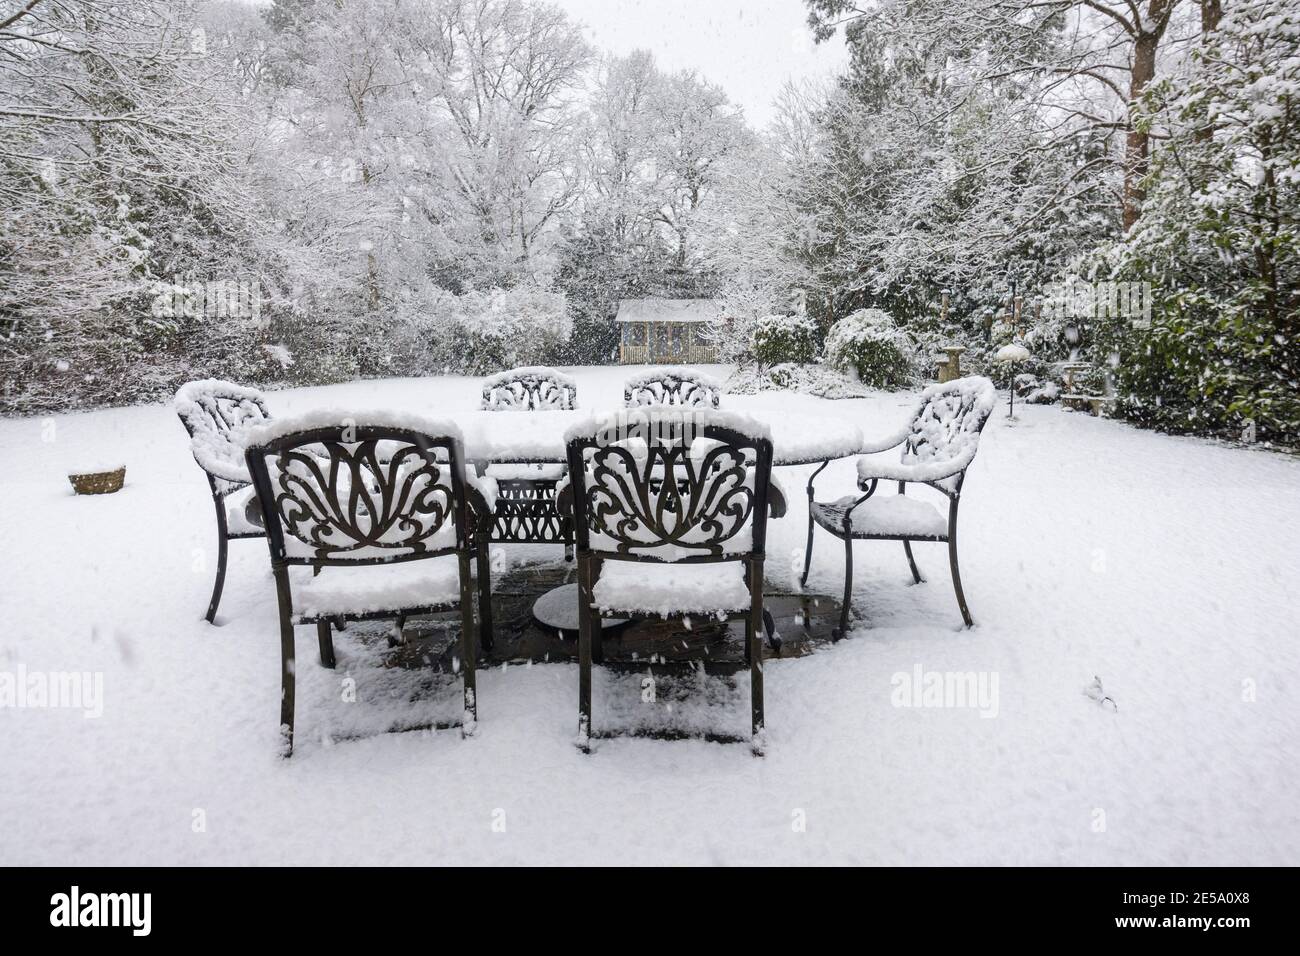 Tables et chaises extérieures sur un patio et arbres couverts de neige lors d'une forte chute de neige dans un jardin de banlieue Woking, Surrey, au sud-est de l'Angleterre Banque D'Images